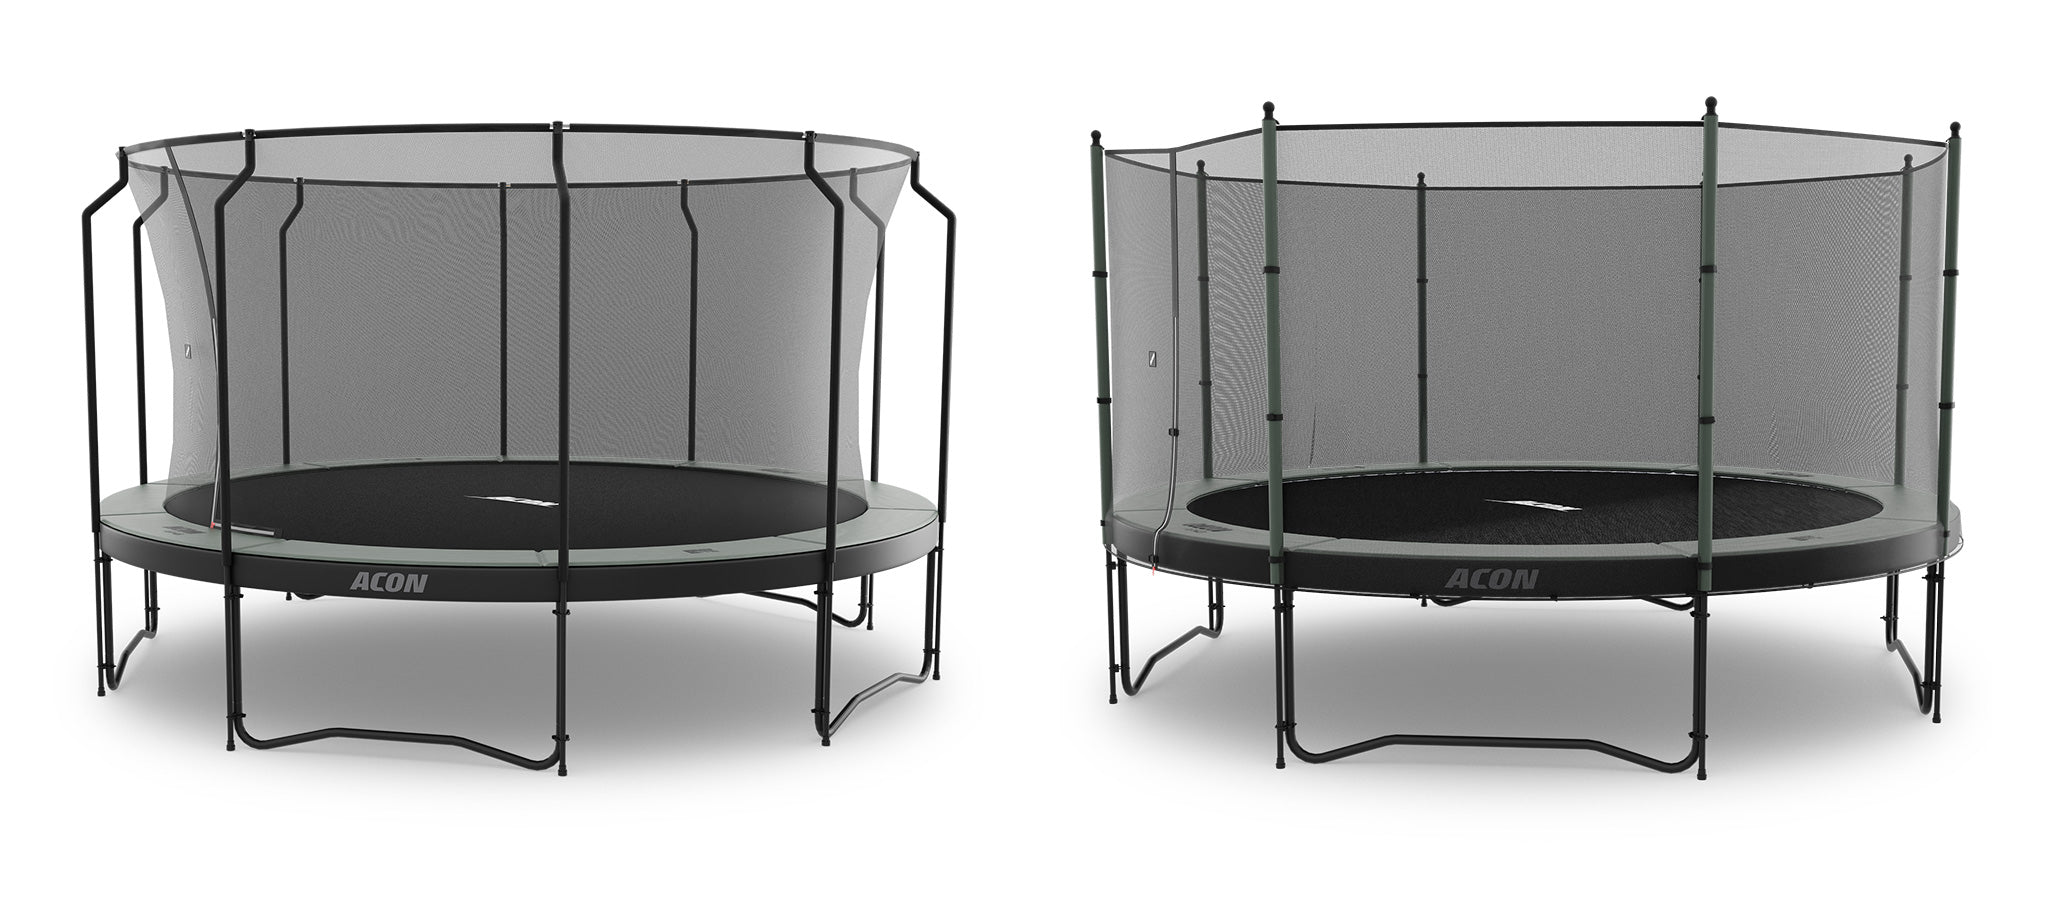 Kaksi ACON 4,6m trampoliinia turvaverkolla valkeaa taustaa vasten. Vasemmalla olevassa trampoliinissa on jousien sisäpuolelle asennettu premium-turvaverkko. Oikealla olevassa trampoliinissa on standard-turvaverkko.